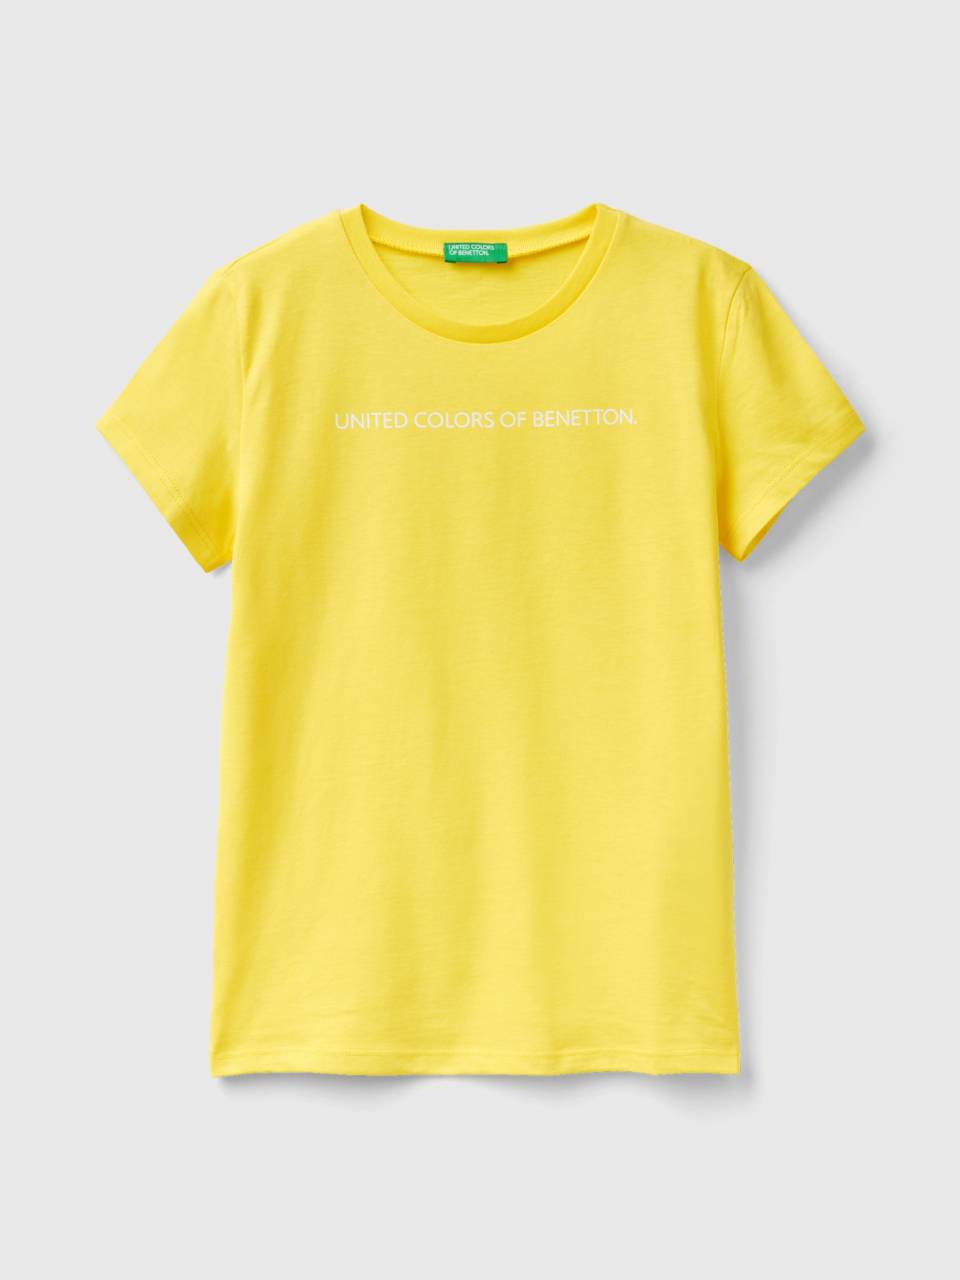 T-Shirt mit Logo | Benetton Gelb - 100% Baumwolle